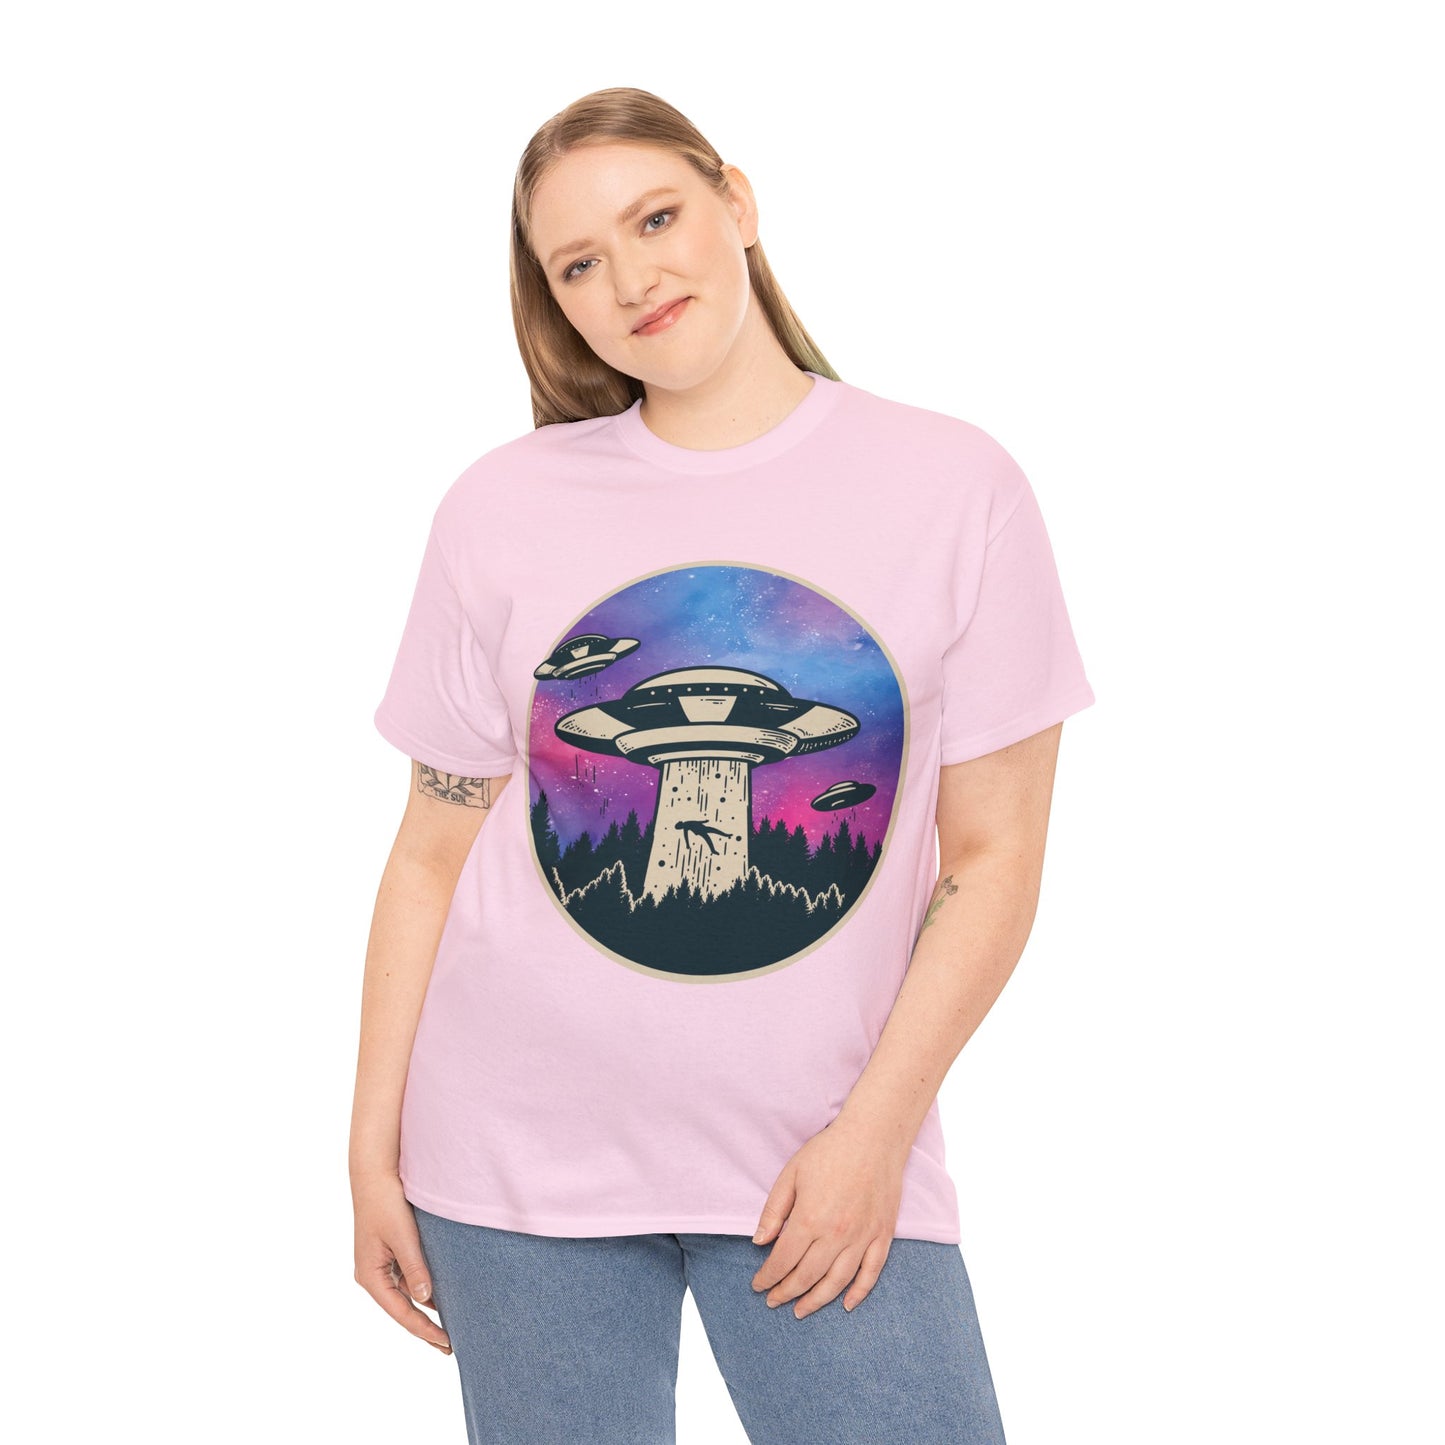 Alien Abduction UFO Funny Graphic Designer Tee